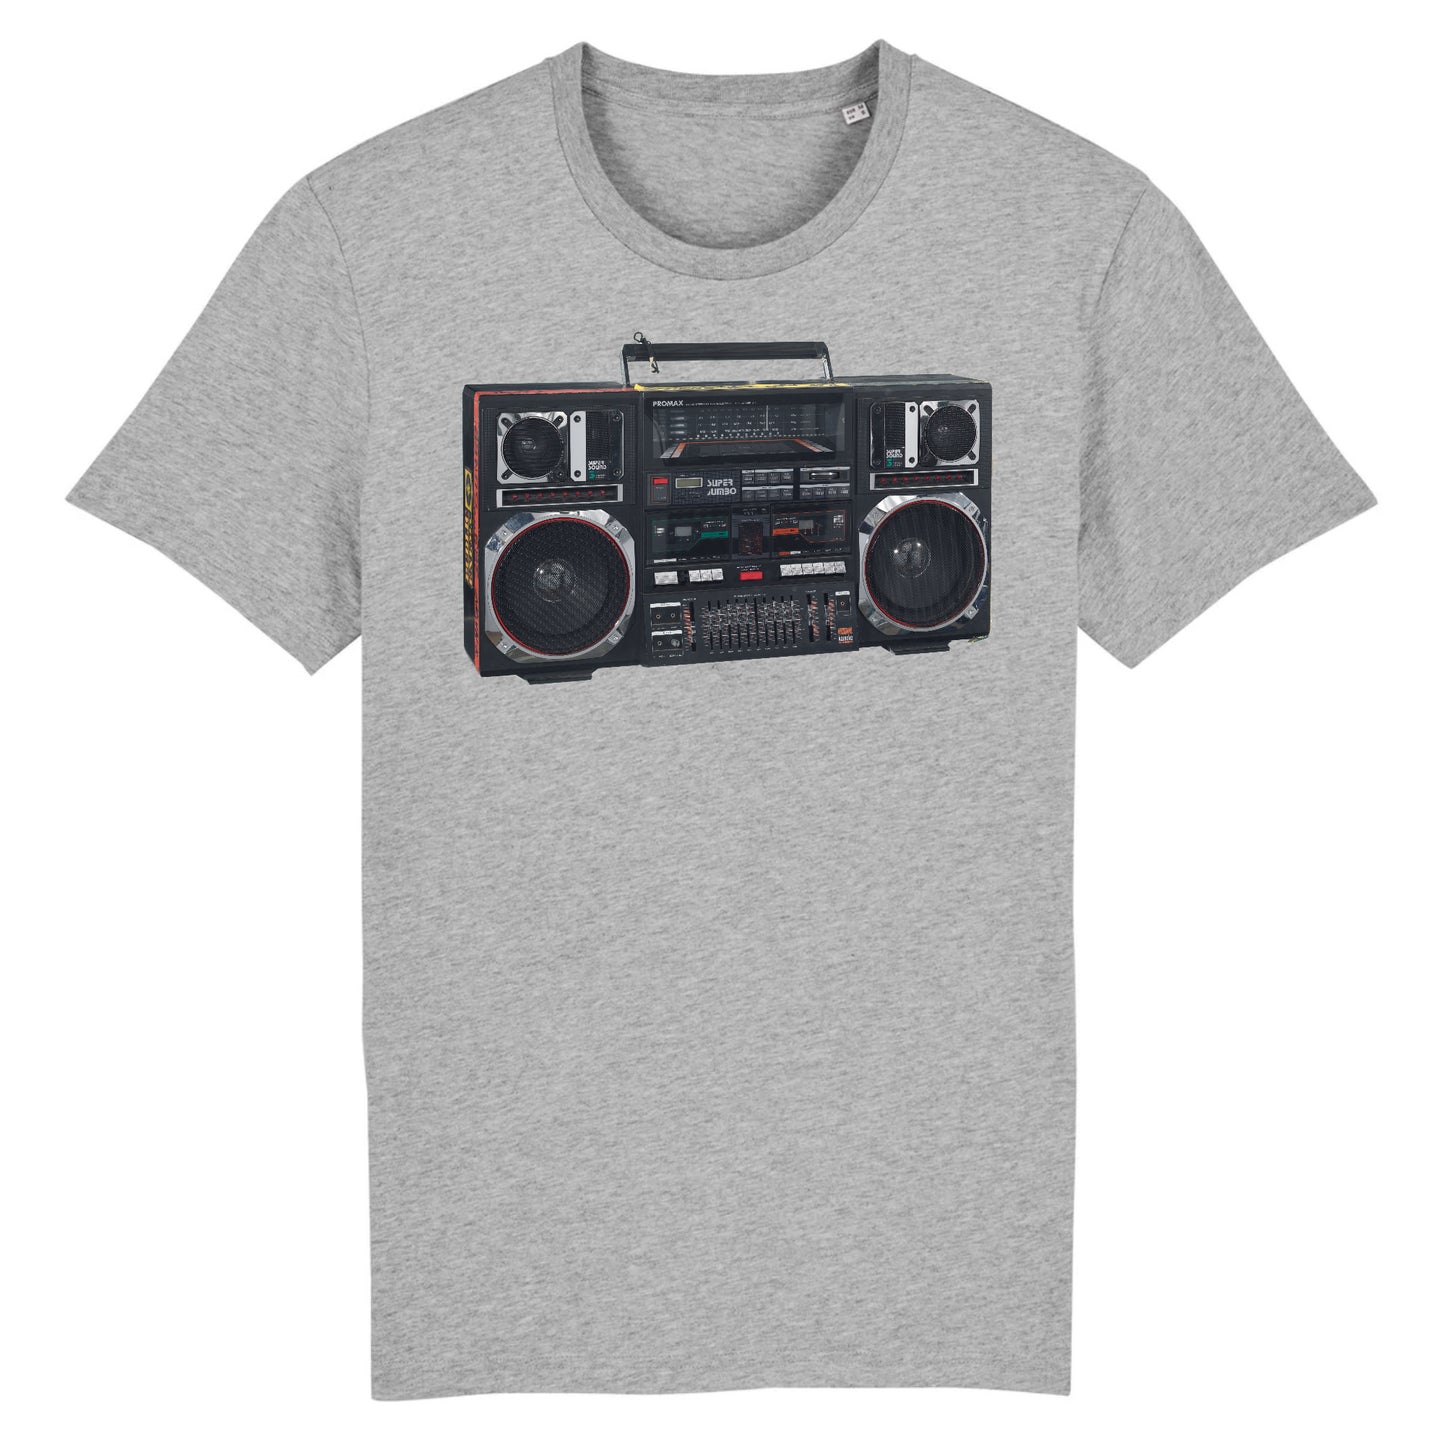 Un Promax Super Jumbo Boombox utilisé par Radio Raheem dans Do the Right Thing de Spike Lee, 1989 - T-shirt en coton biologique